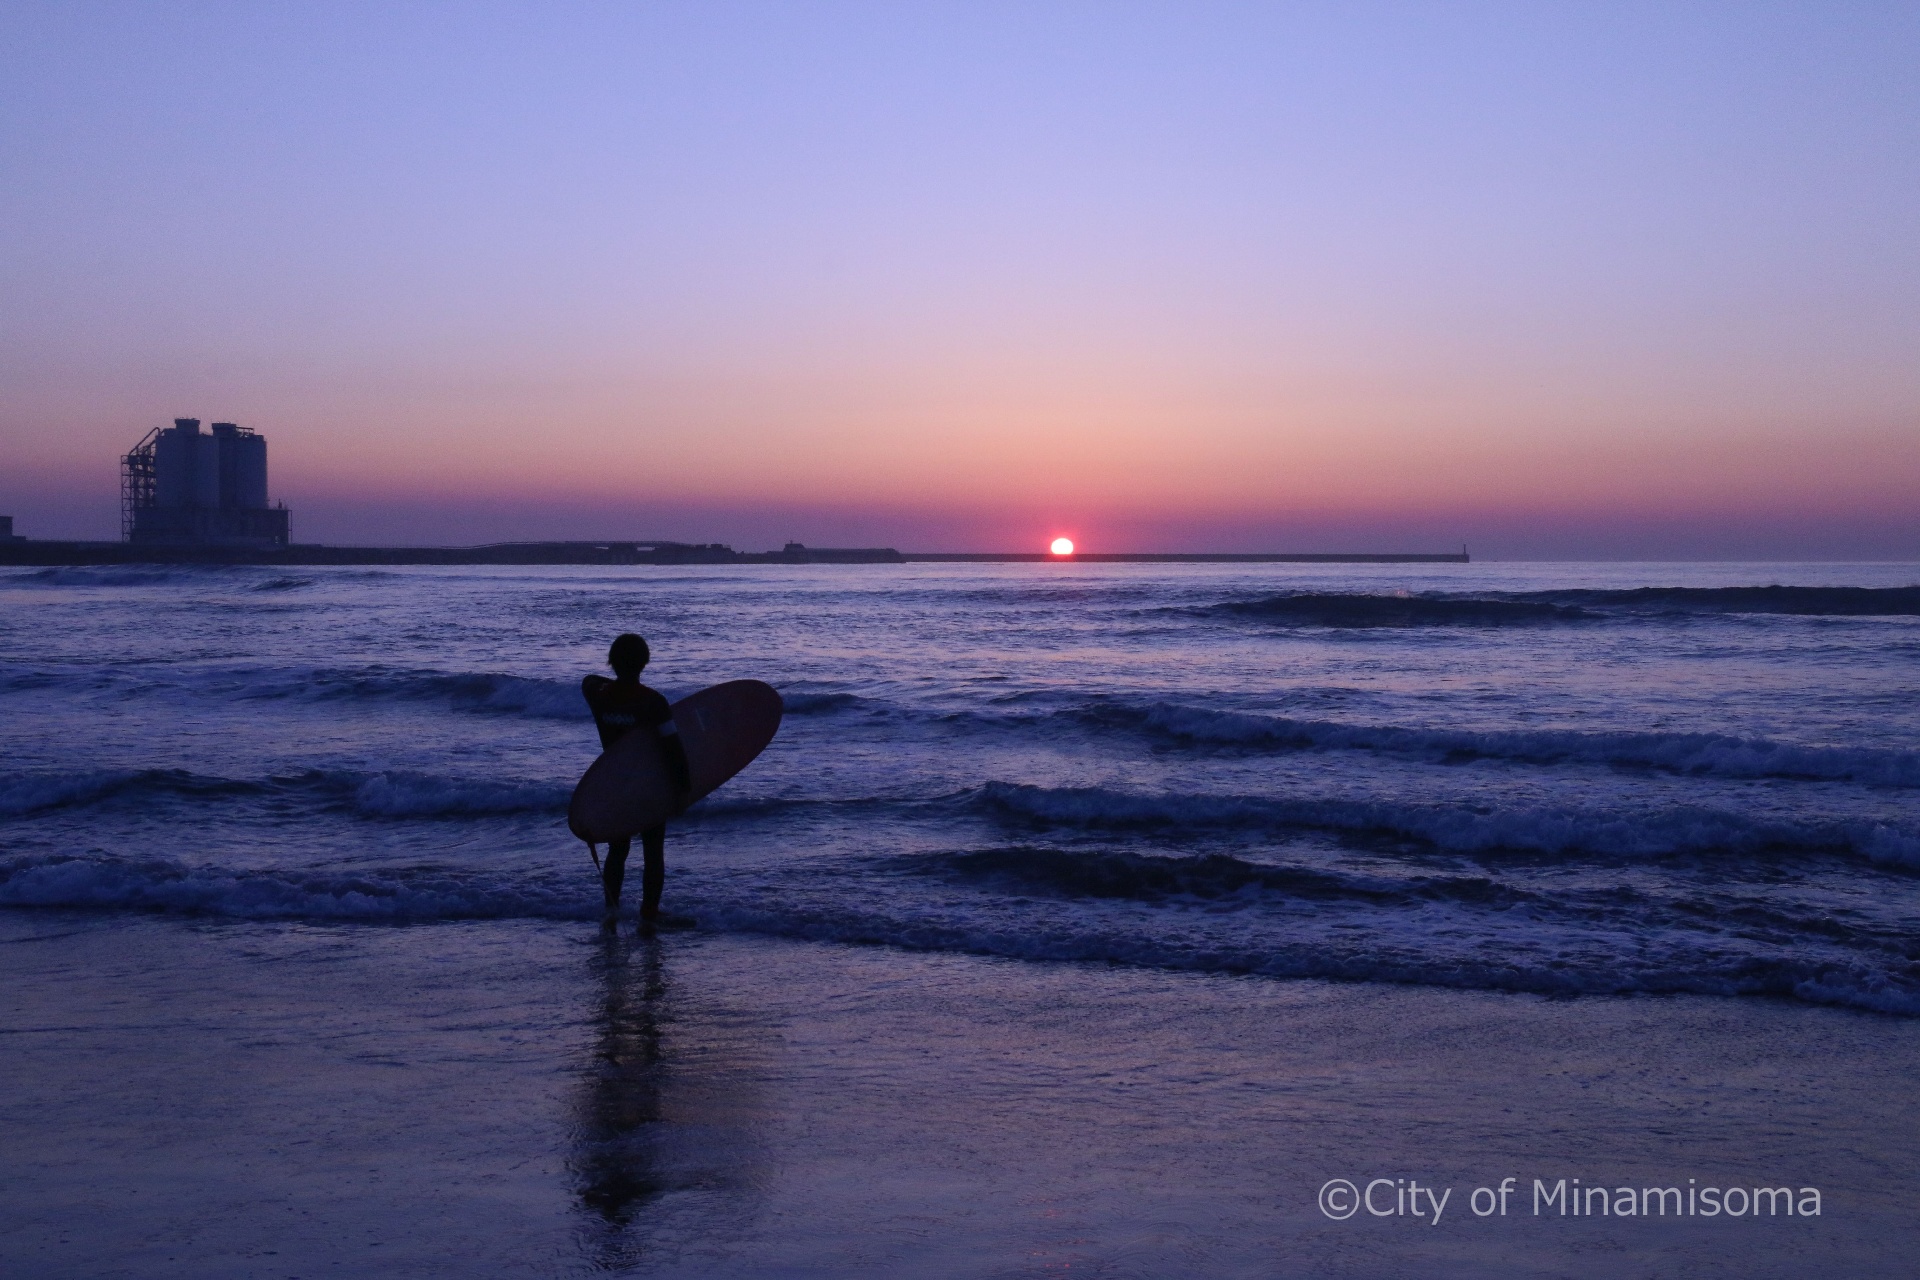 原町区北泉の海岸の様子。夏の夜明け、サーフィンを持った男性のシルエットが朝焼けの海に浮かび上がる。